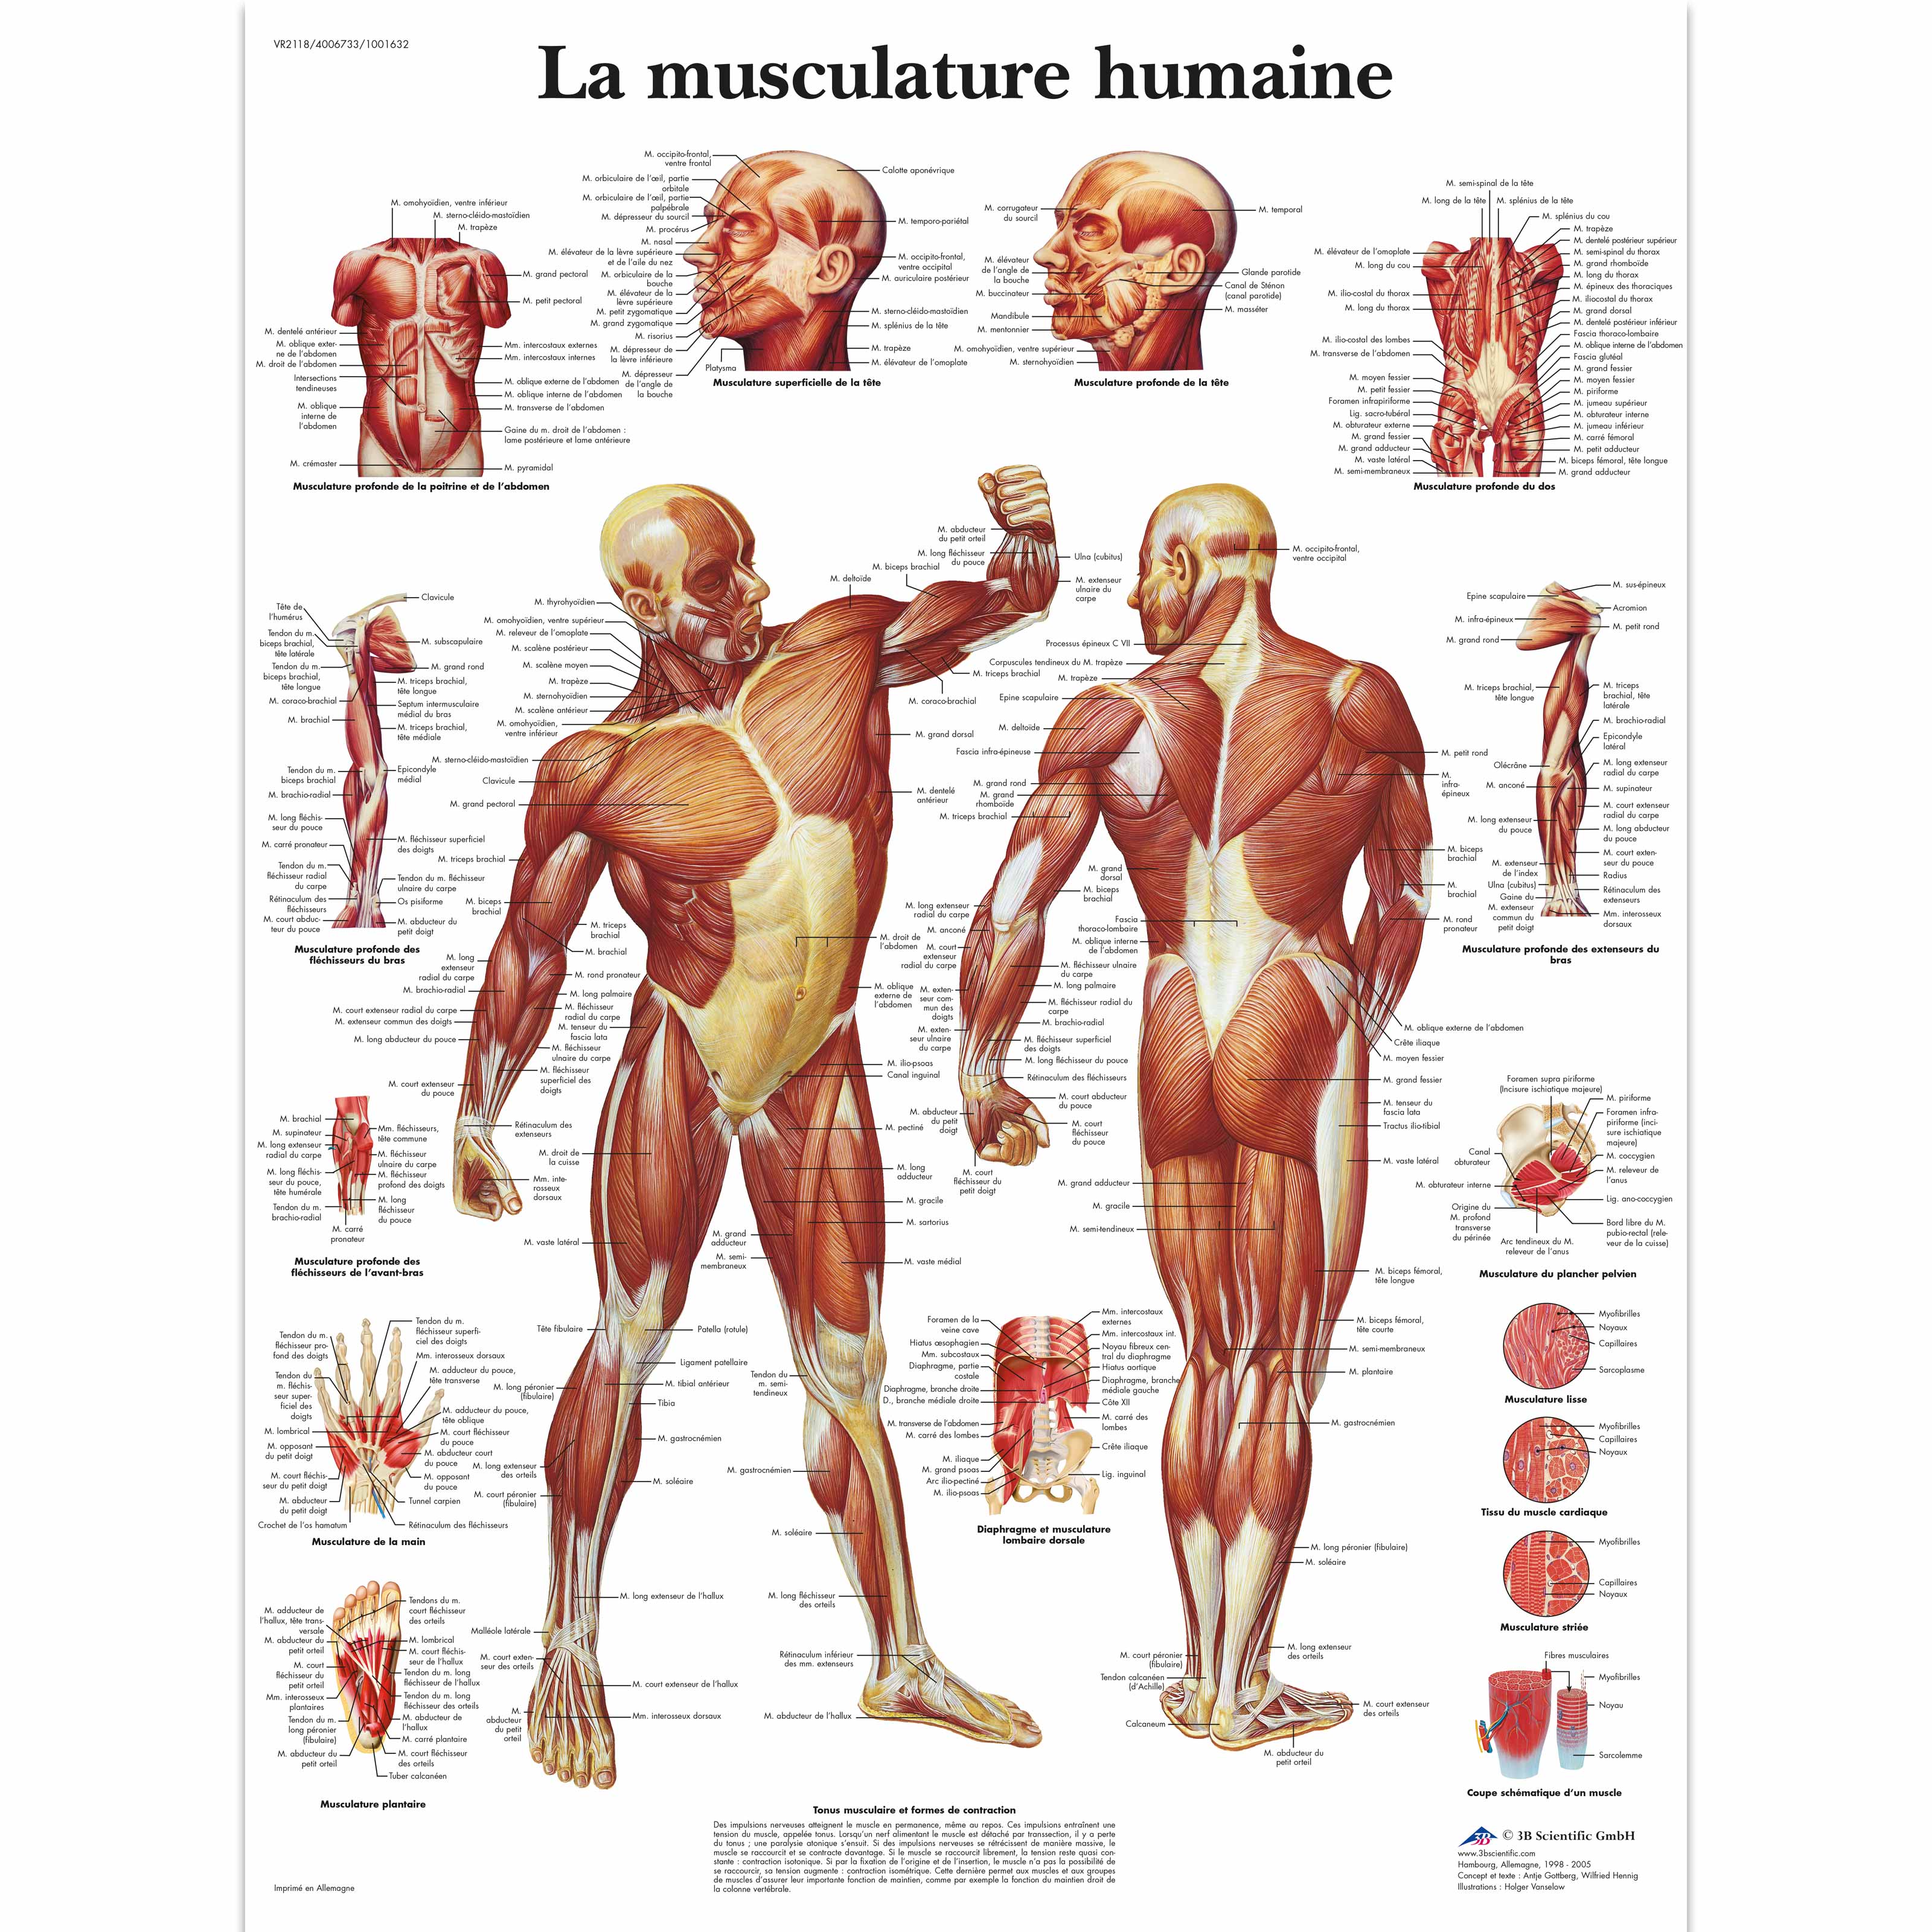 Anatomie de la musculature humaine VR2128L à 18,90 €